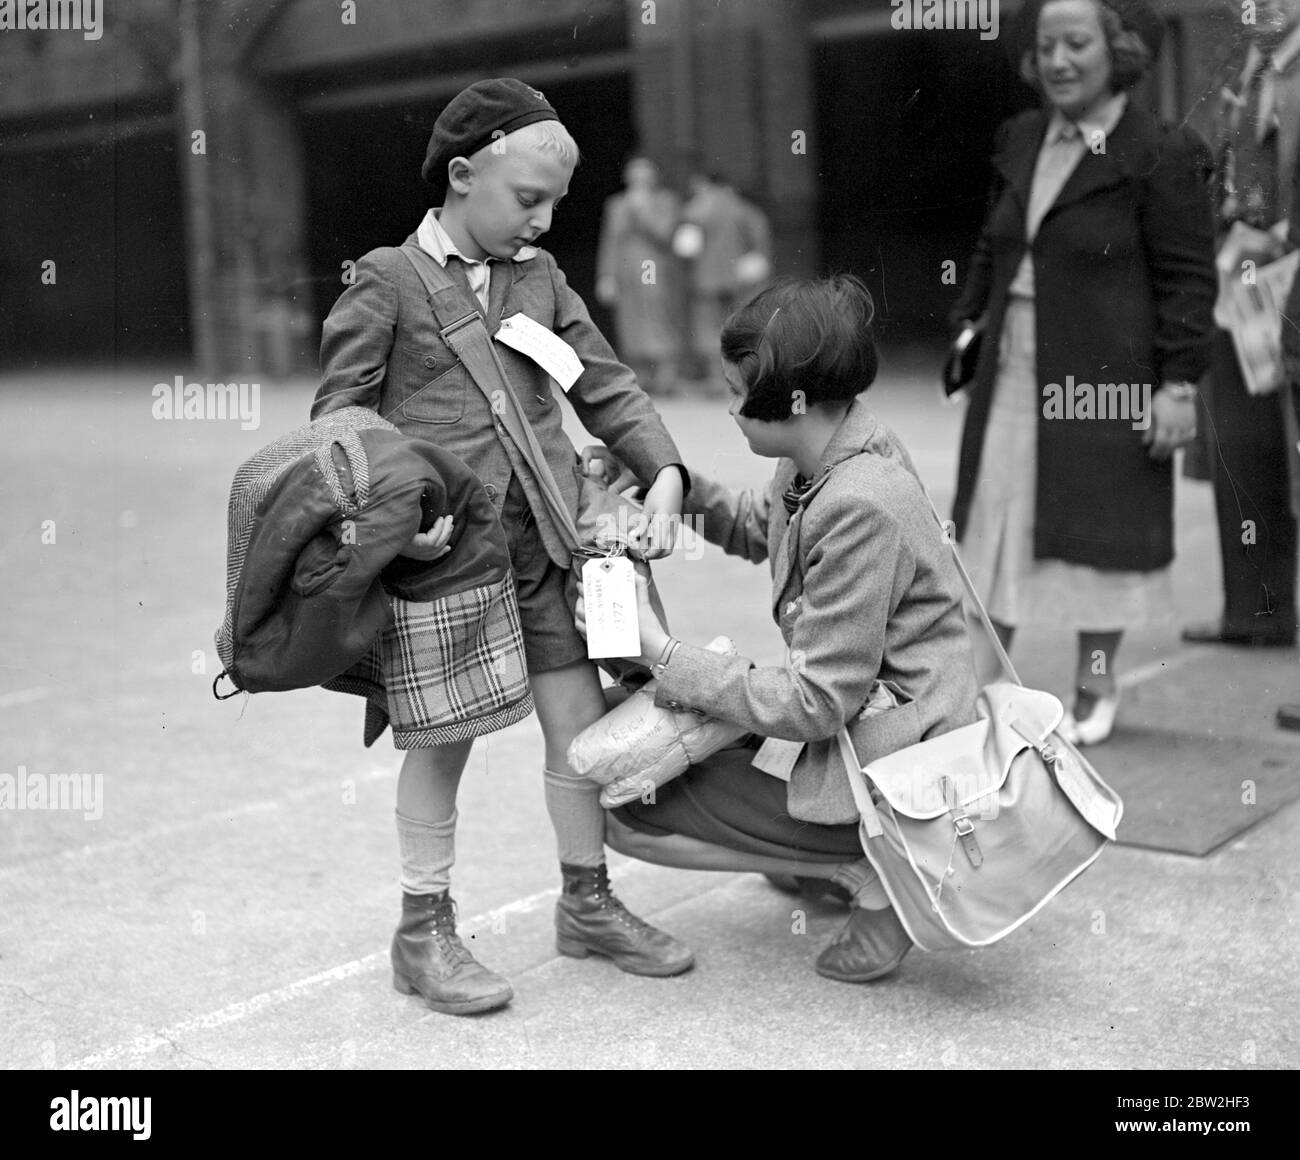 Kriegskrise, 1939 - Luftüberfall Vorsichtsmaßnahmen dieser kleine polnische Flüchtling war unter den Soho-Kindern evakuiert aus Middlesex Street, London. 1939 Stockfoto